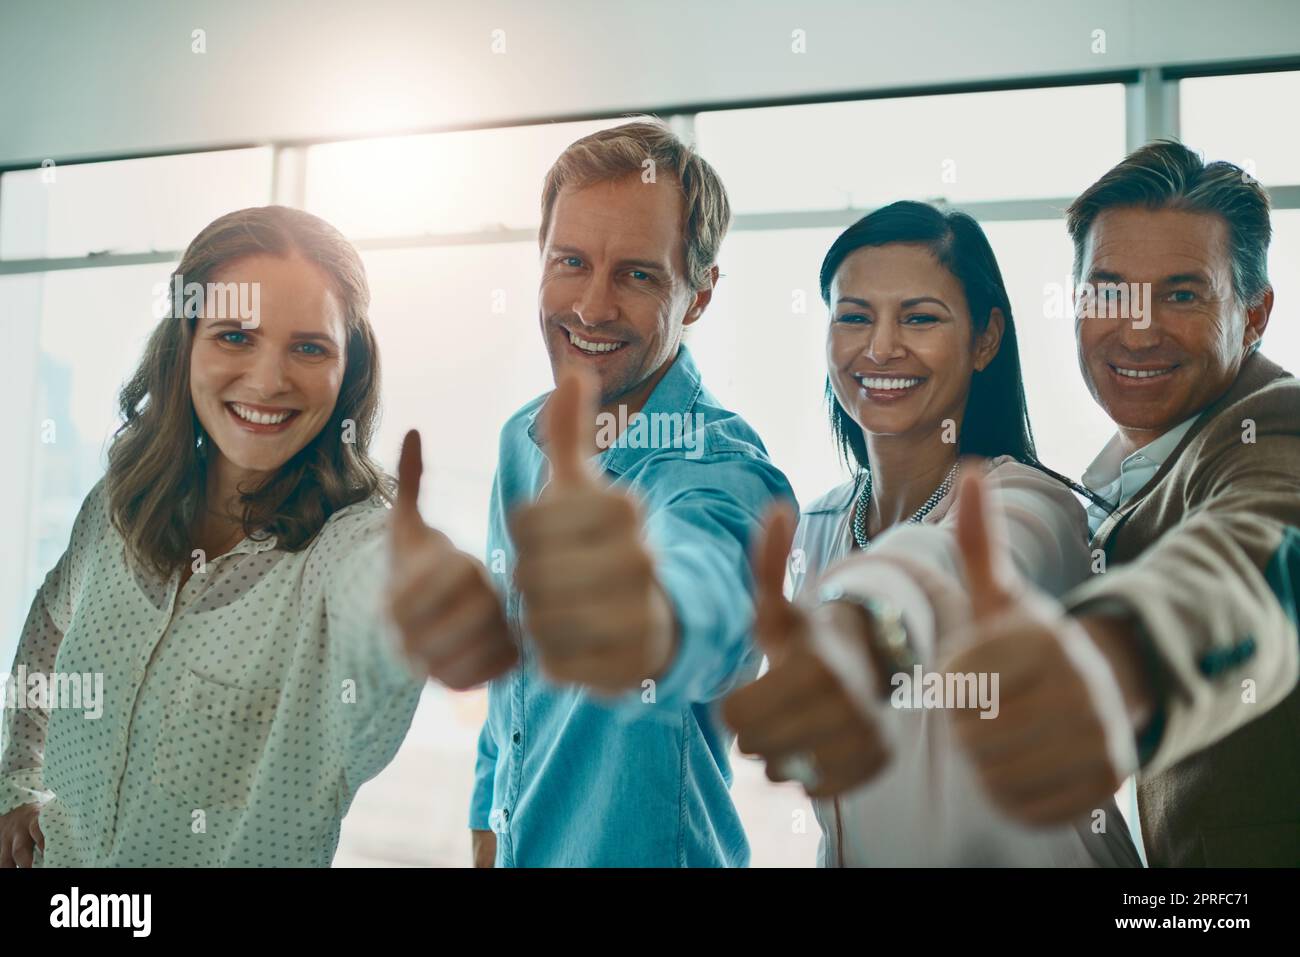 Motiviert und angefeuert. Eine motivierte Gruppe von Geschäftsleuten zeigt Daumen nach oben und lächelt, während sie die Kamera anschaut. Stockfoto